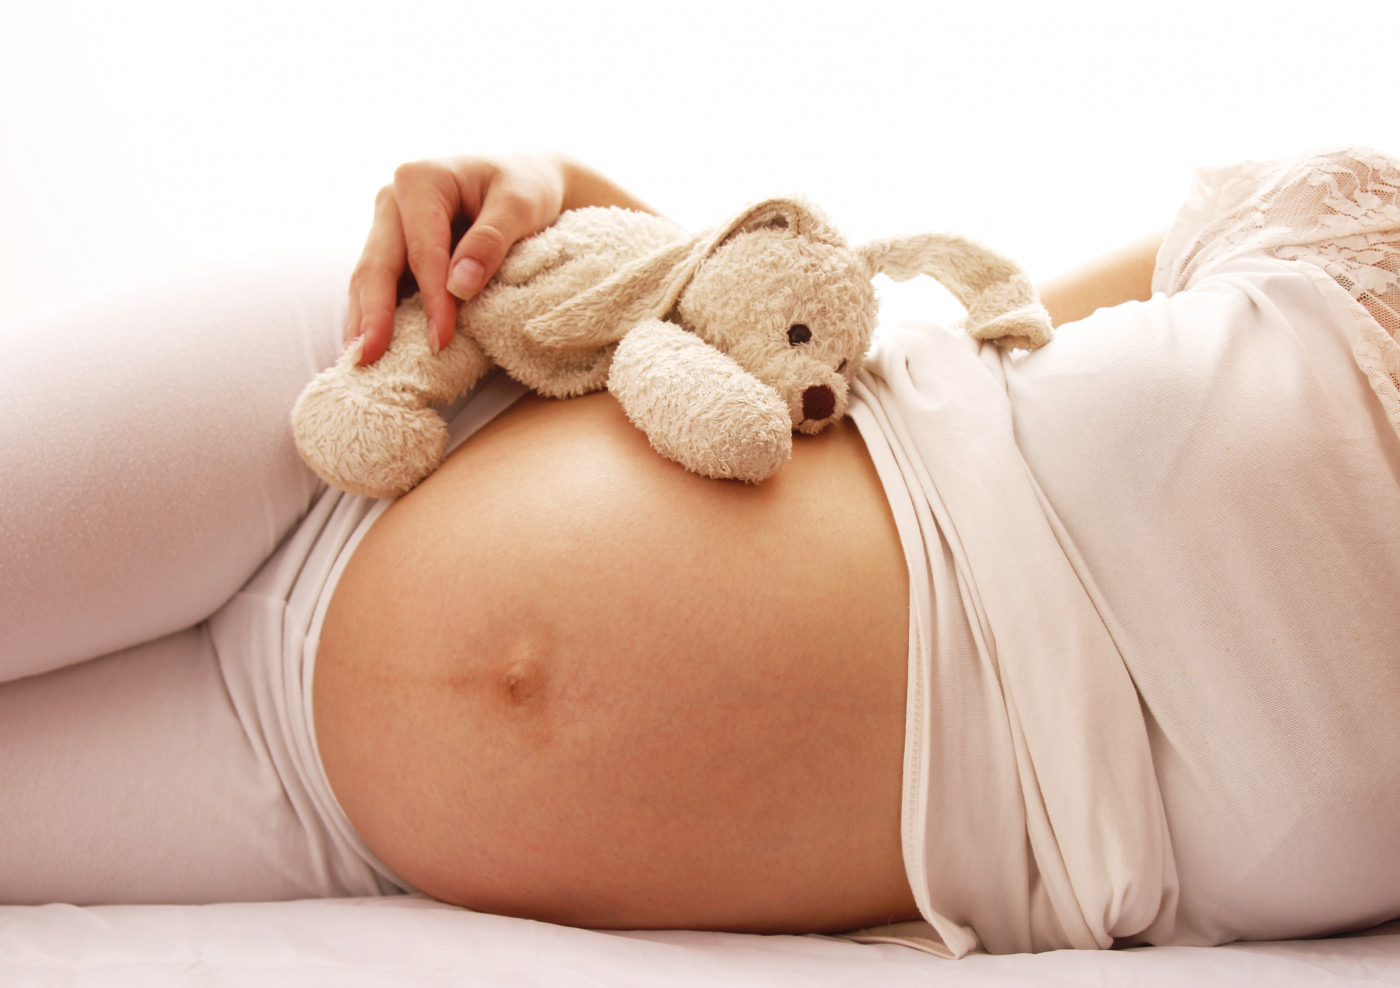 prenatal CF screening